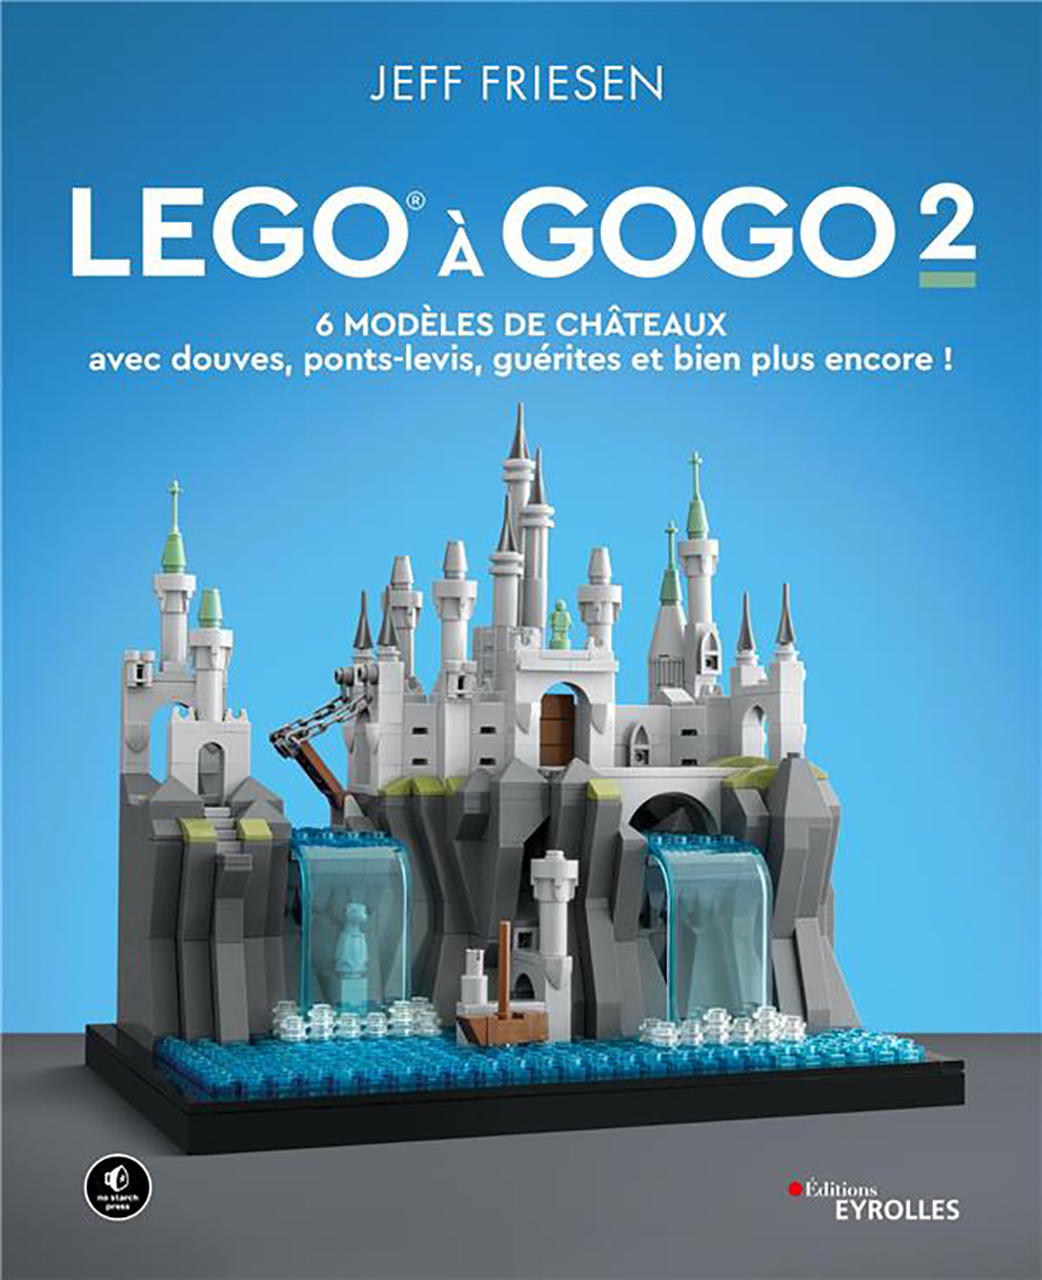 Lego a gogo 2